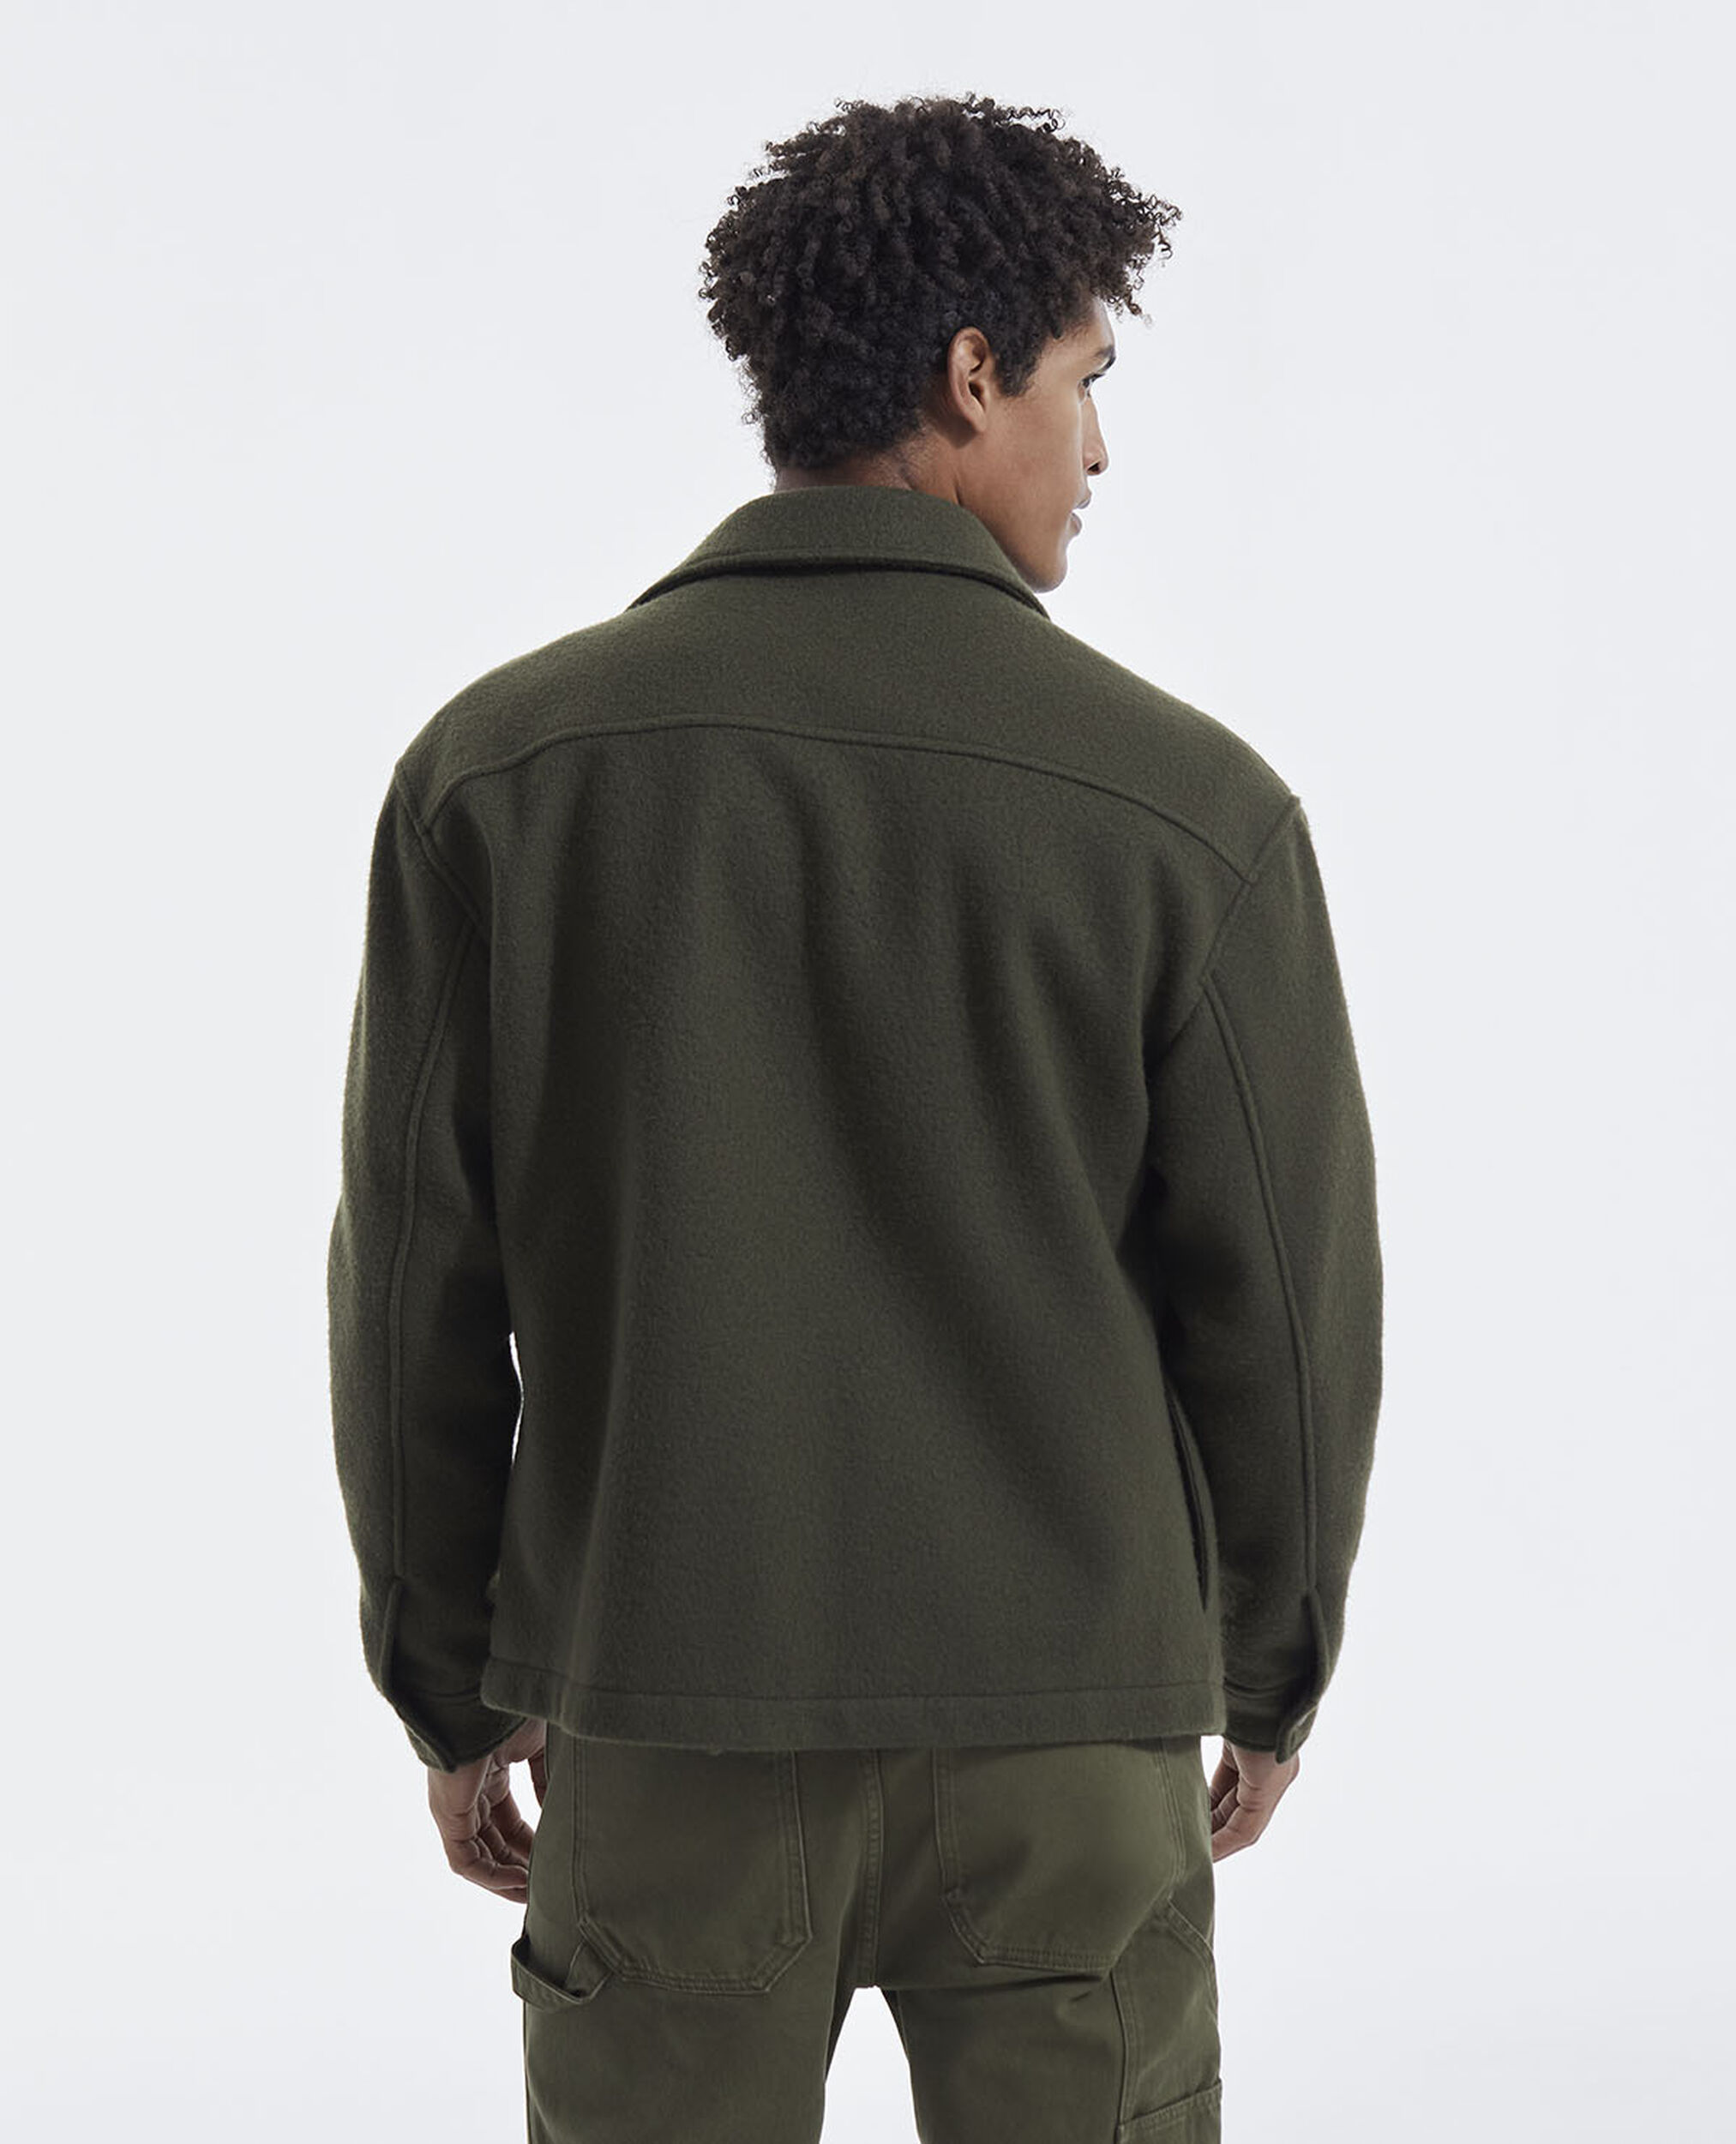 Overshirt-style khaki knit jacket, KAKI, hi-res image number null